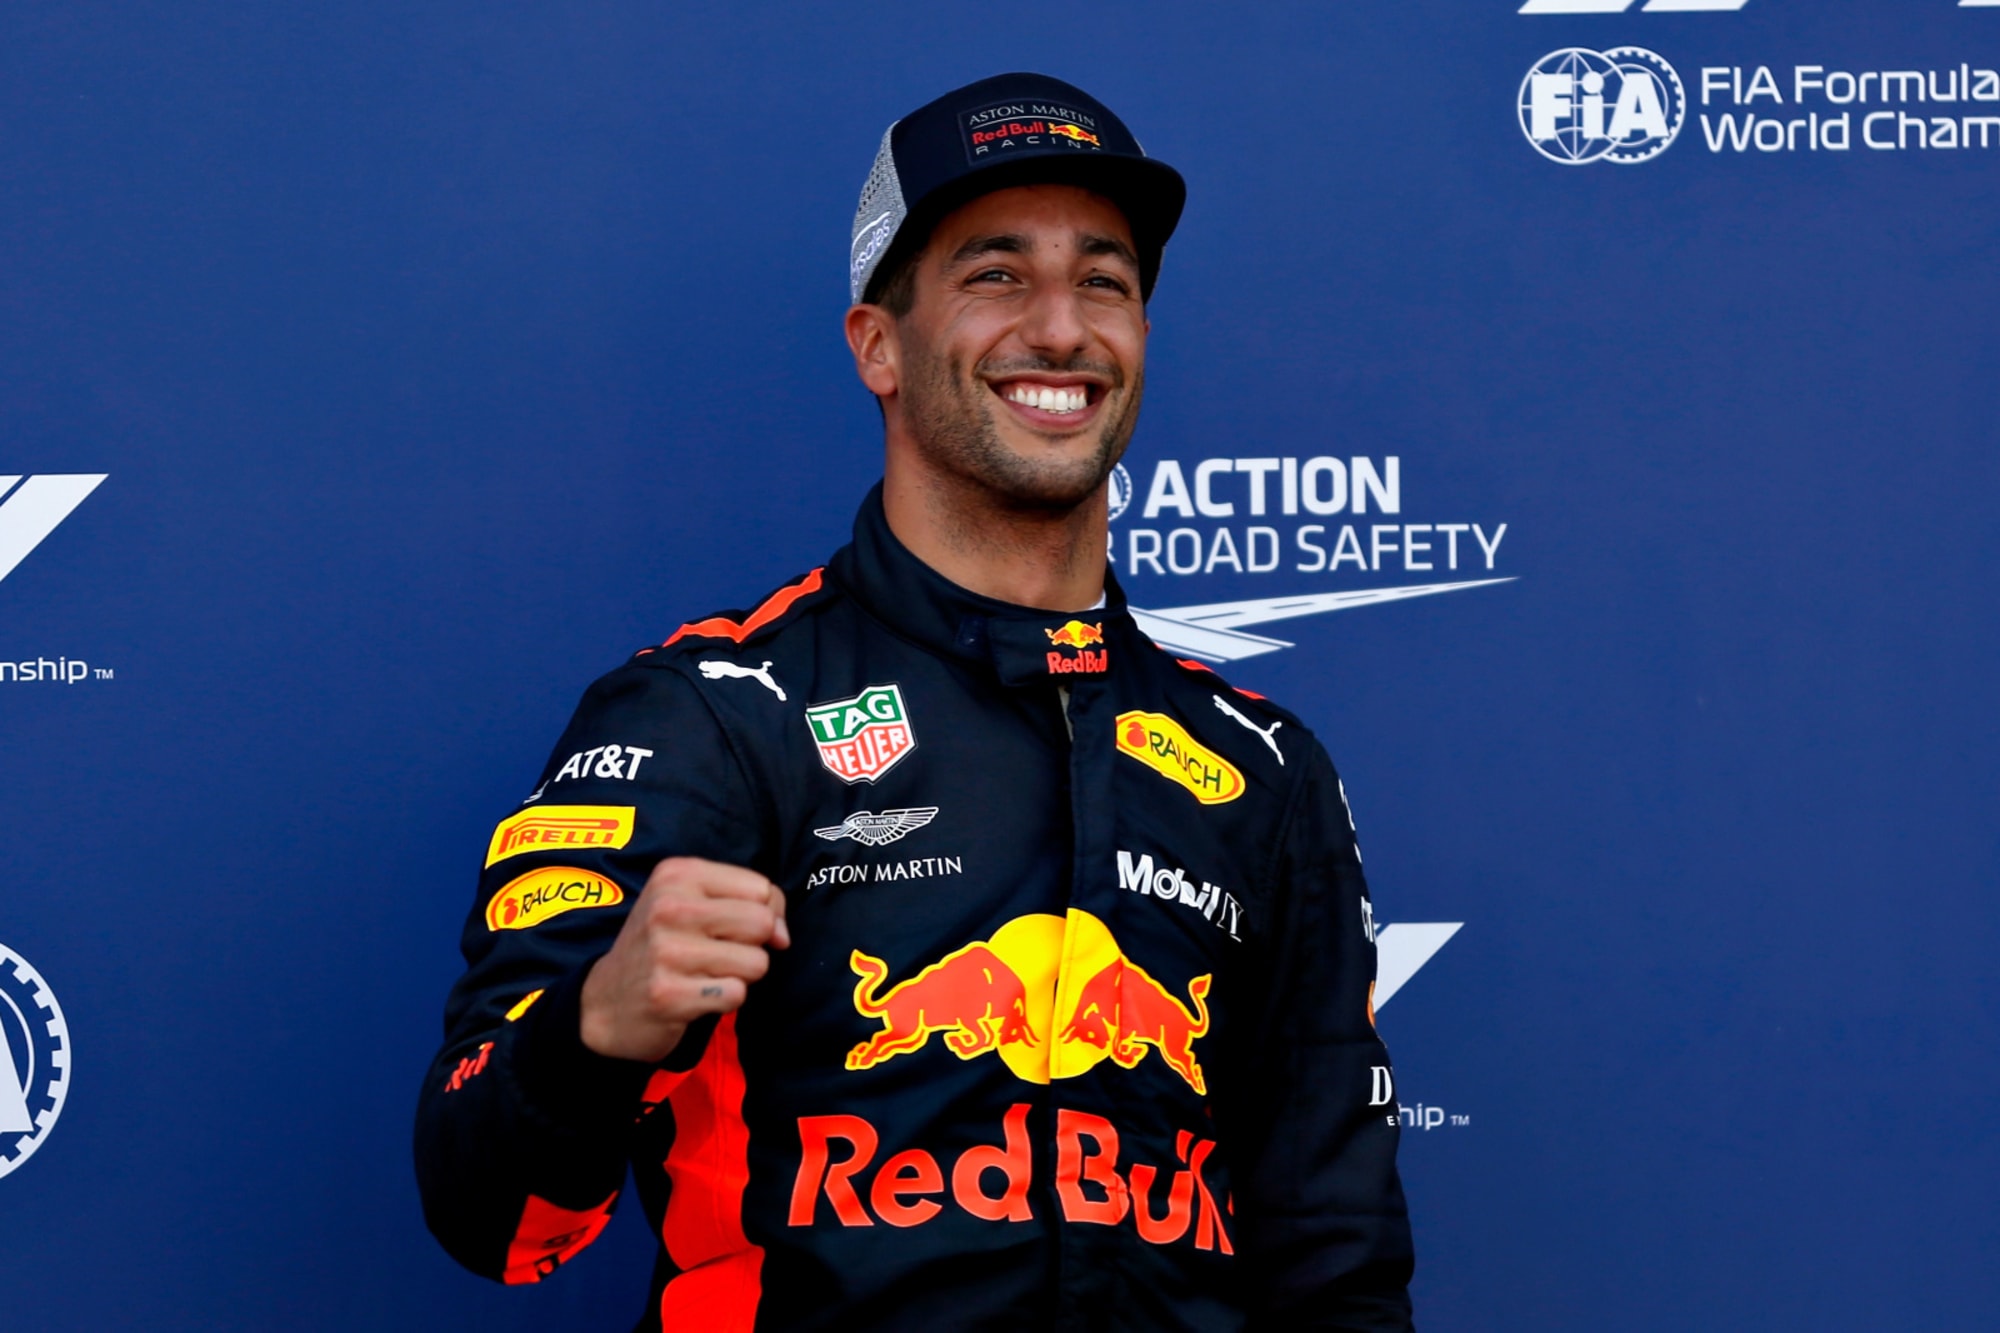 Formula 1: Daniel Ricciardo on pole for 2018 Monaco Grand Prix